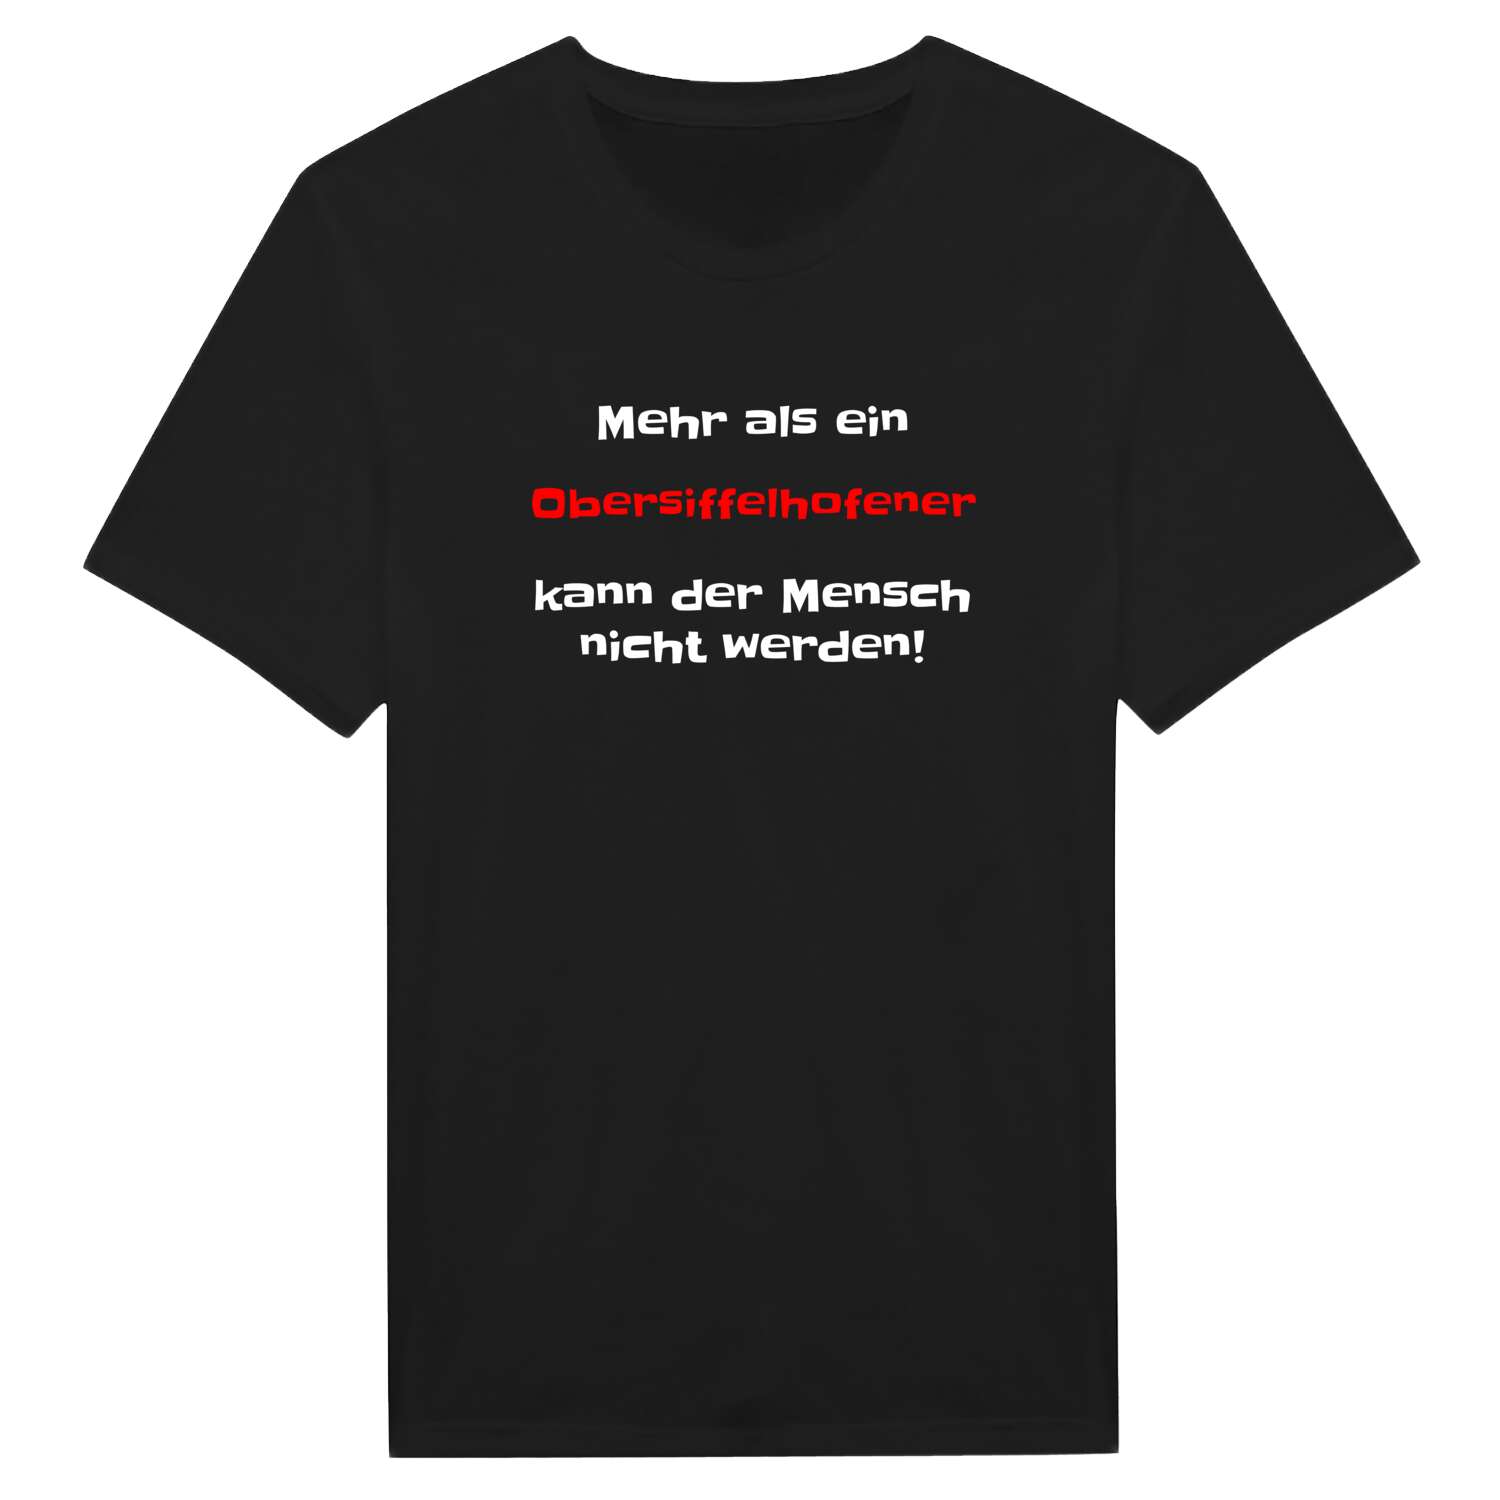 Obersiffelhofen T-Shirt »Mehr als ein«